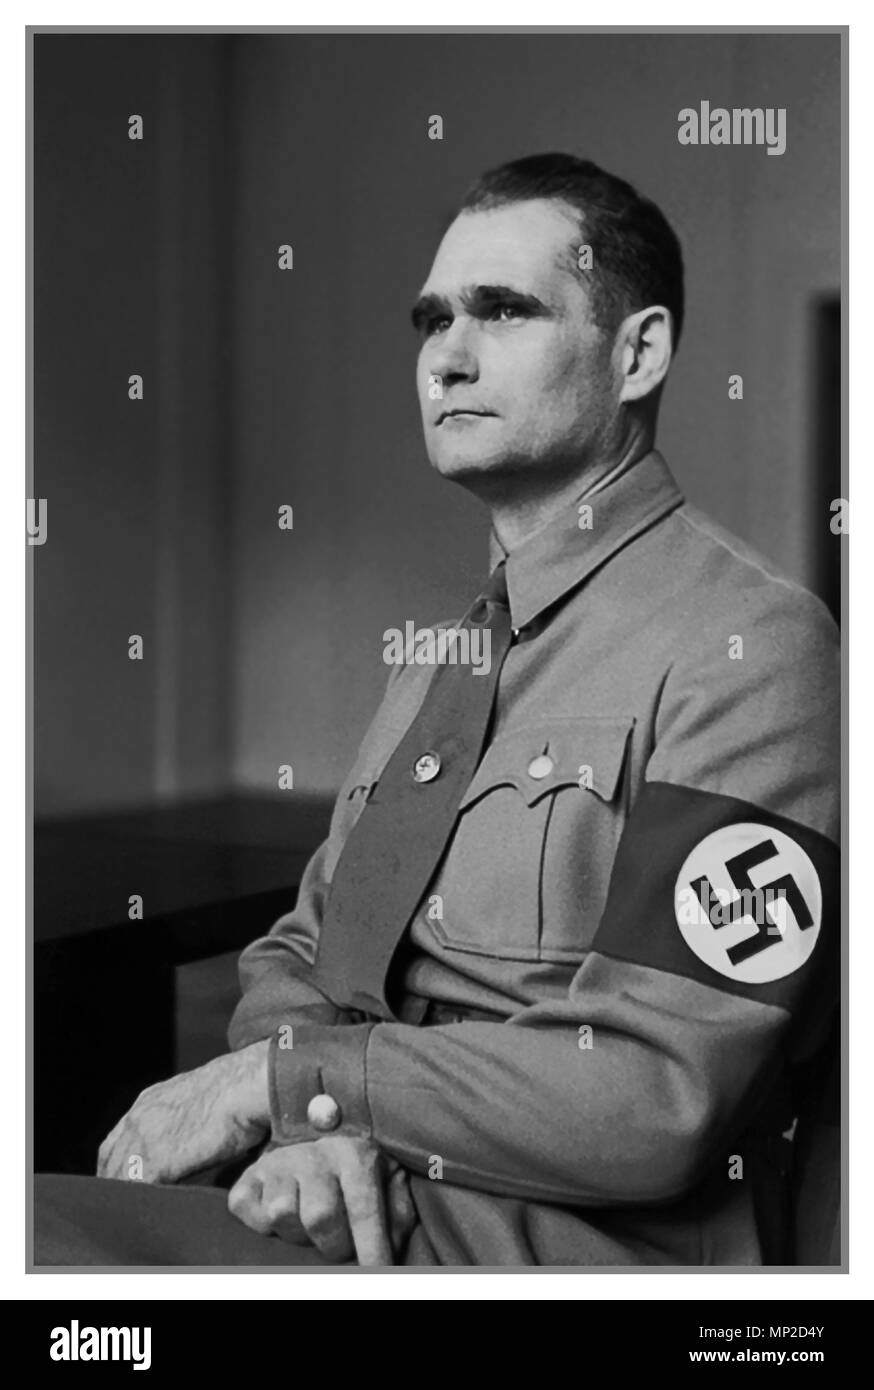 30er Vintage historischen formellen Portrait von Rudolf Hess Tragen eines NS-Hakenkreuz Armbinde. Hess war ein prominenter Politiker in Nazi-deutschland. Stellvertreter des Führers Adolf Hitler 1933 ernannt, er war in dieser Position bis 1941, als er flog Solo nach Schottland in einem Versuch, Frieden mit dem Vereinigten Königreich während des Zweiten Weltkrieges zu verhandeln. Er wurde gefangen genommen und wurde schließlich von Verbrechen gegen den Frieden überführt, die eine lebenslange Haftstrafe im Gefängnis in Spandau bis zu seinem Selbstmord Stockfoto